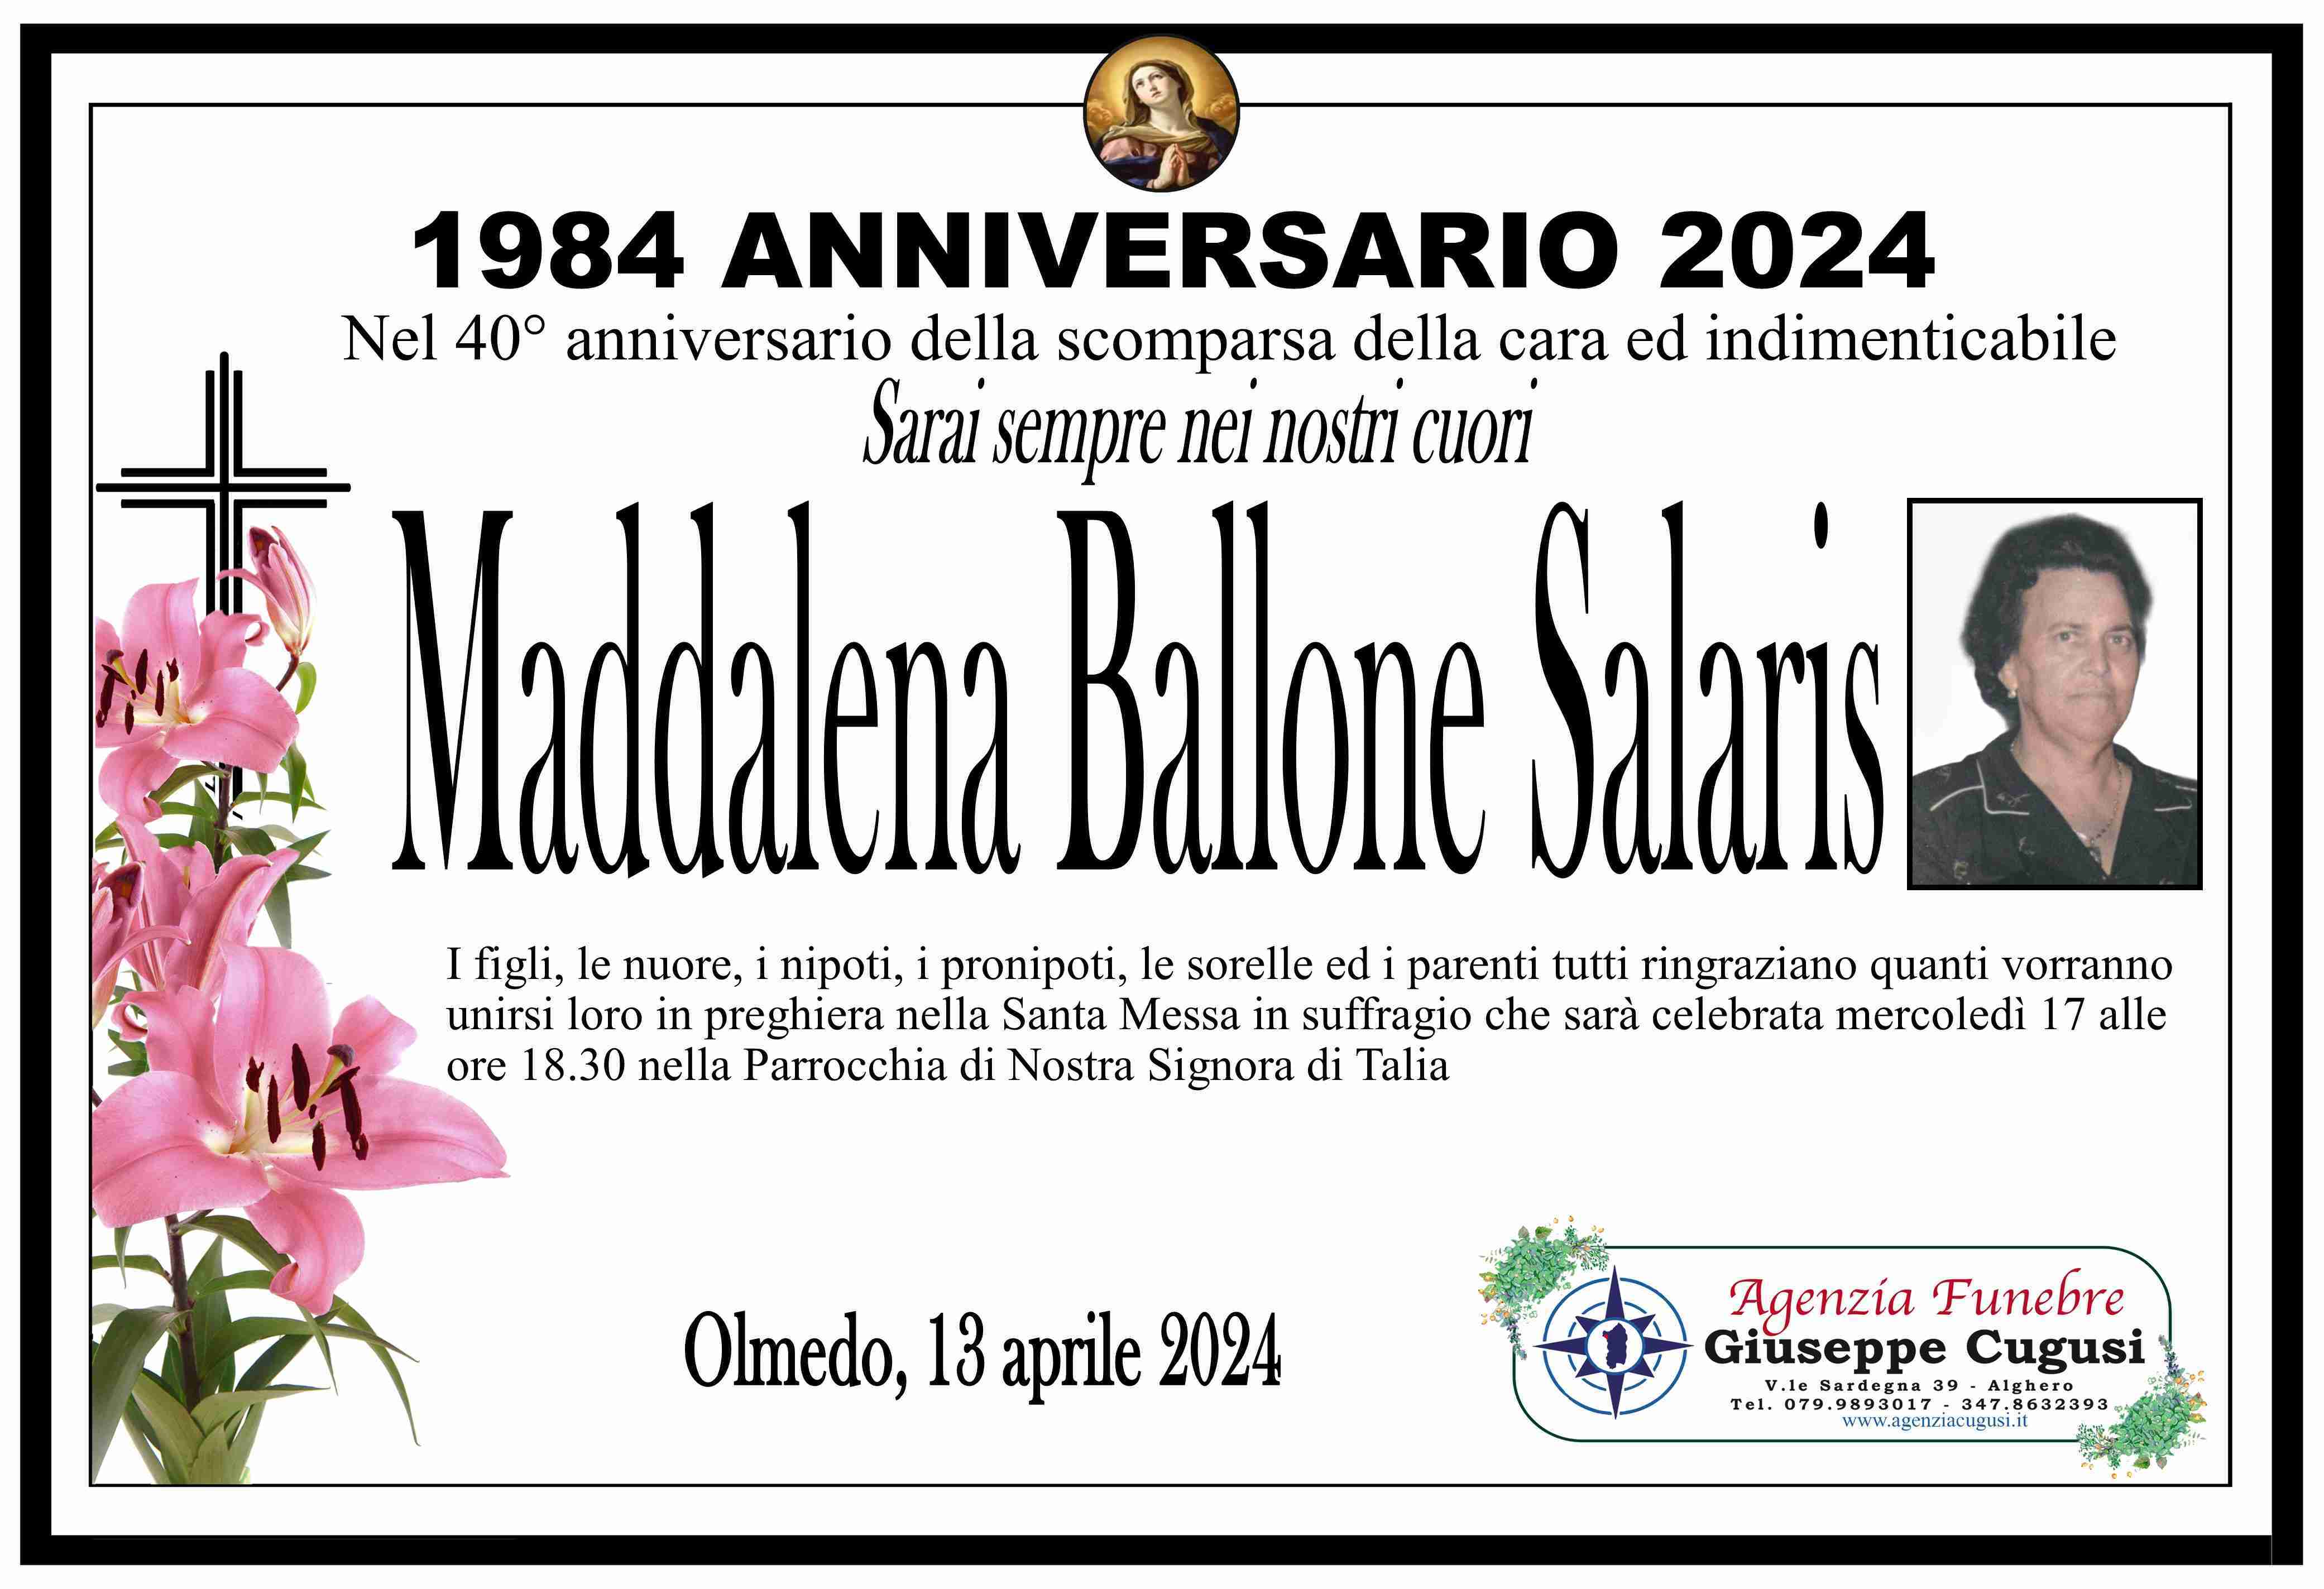 Maddalena Ballone Salaris